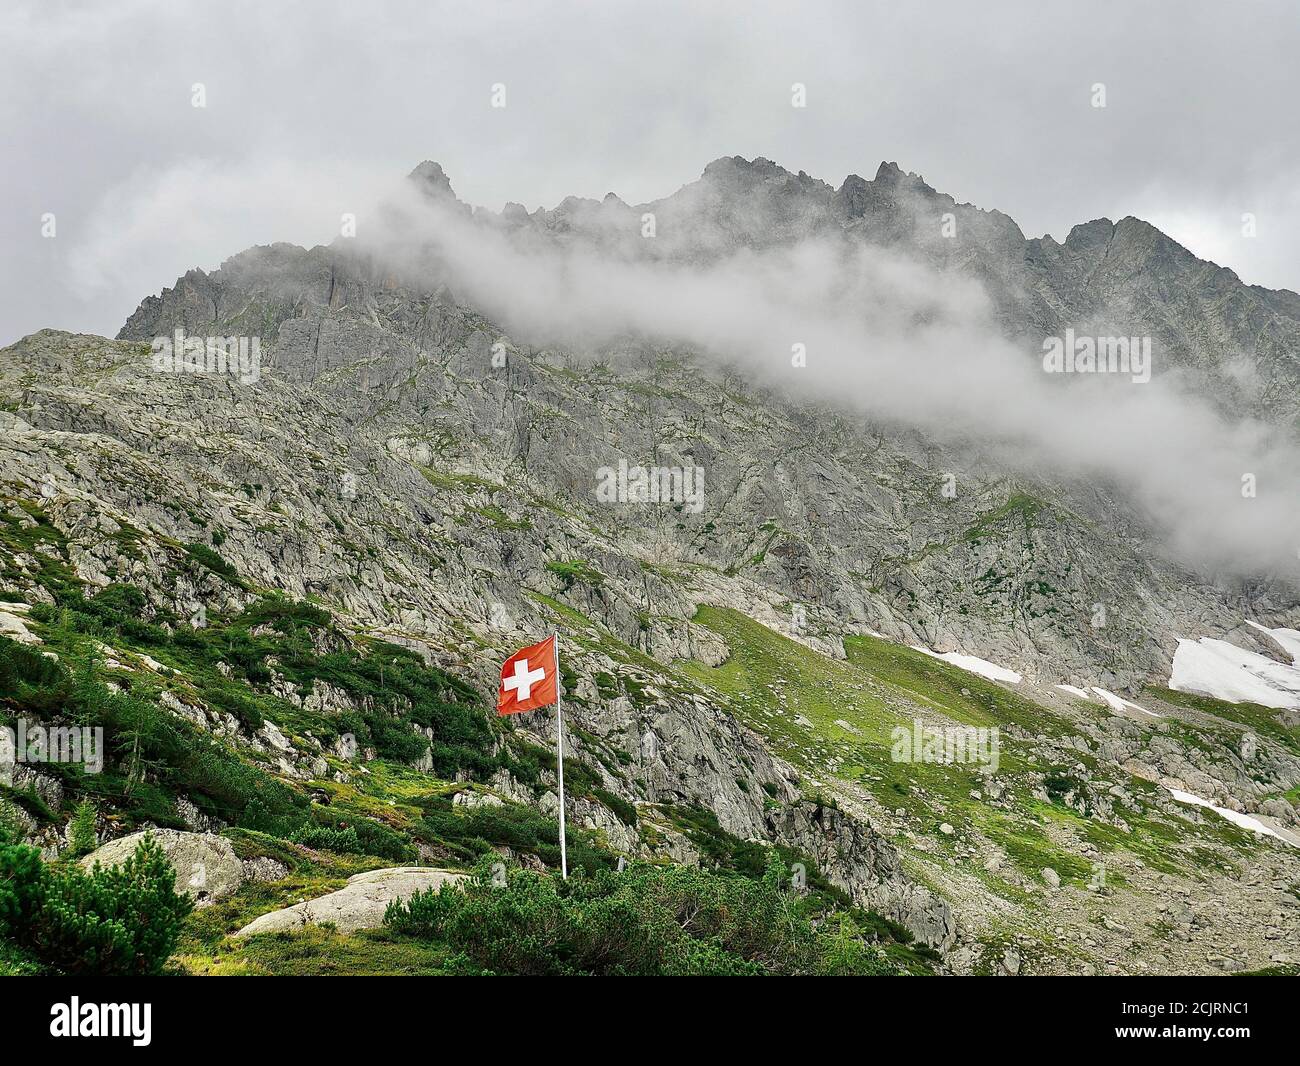 Schweizerflagge wor den wolkenbehangenen Alpen. Schöne Komposition aus Bergen, Wolken und der Schweizer Flagge. Foto Stock